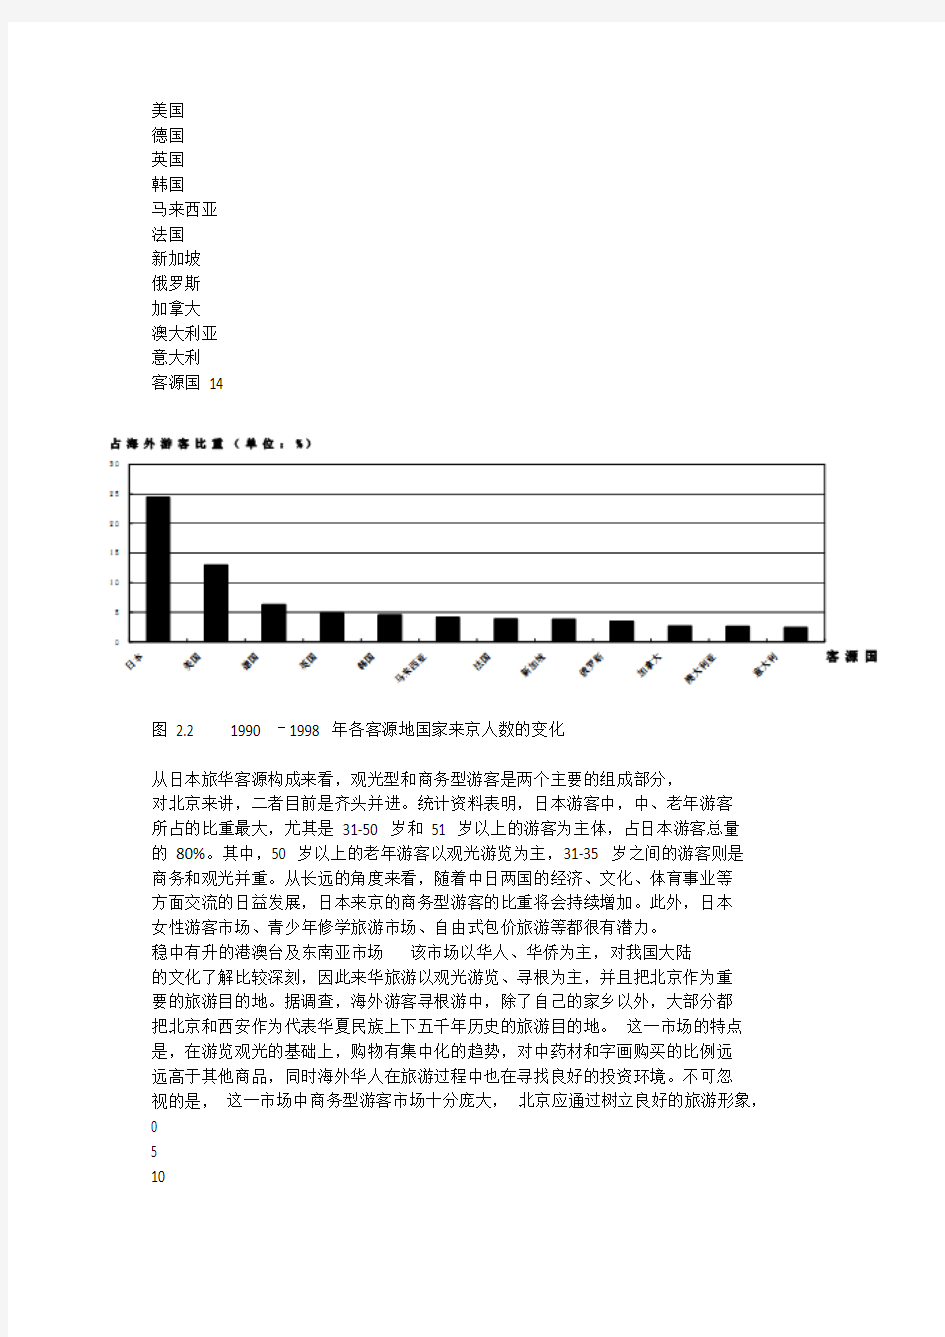 北京客源市场分析